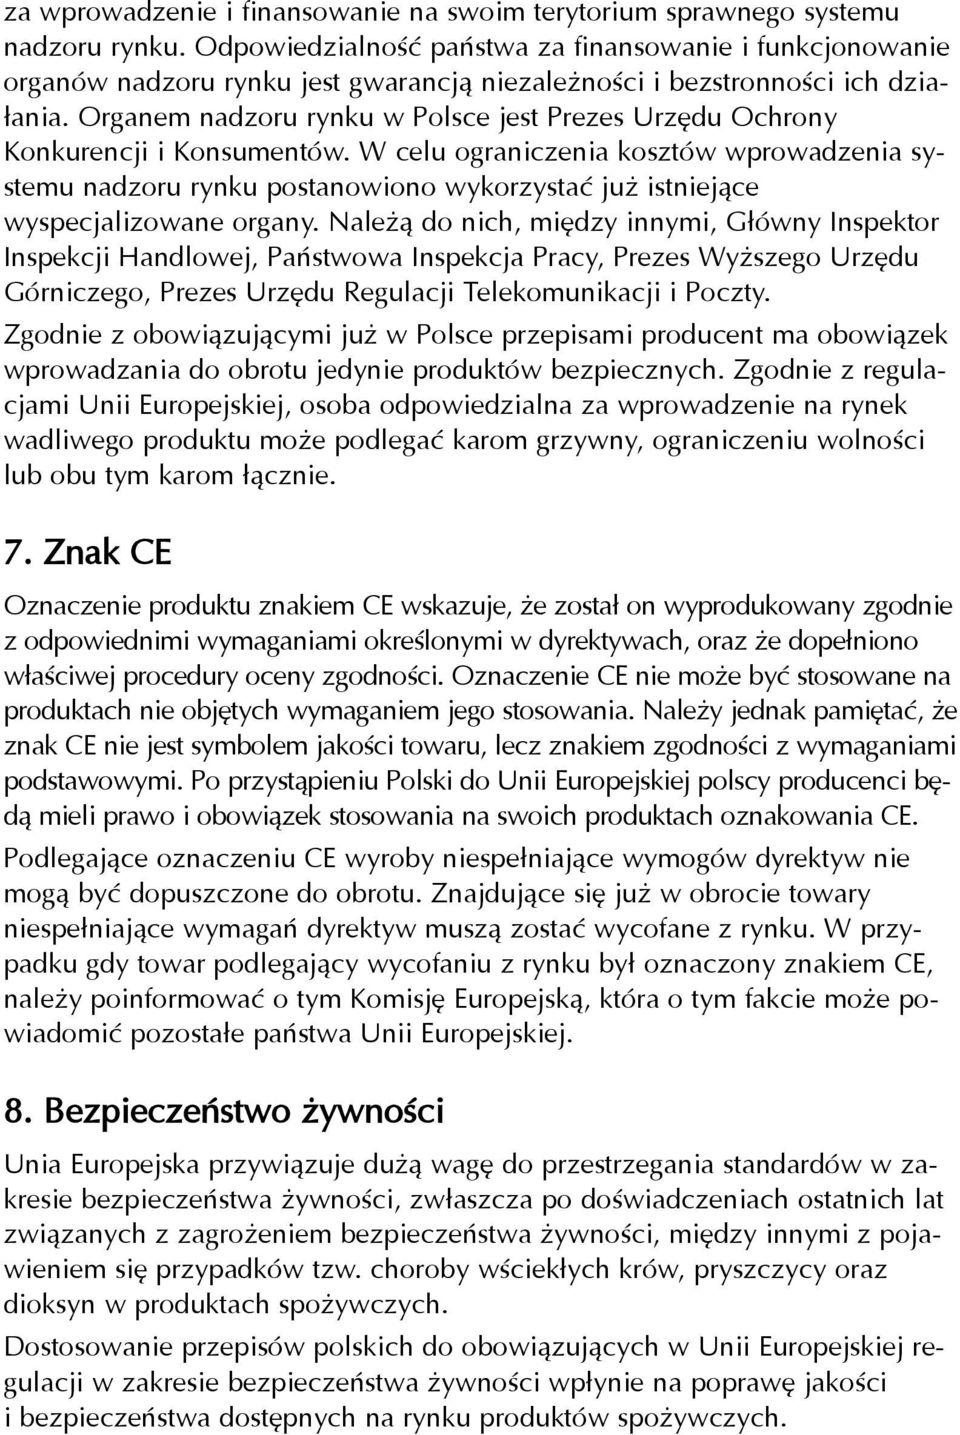 Organem nadzoru rynku w Polsce jest Prezes Urzêdu Ochrony Konkurencji i Konsumentów.